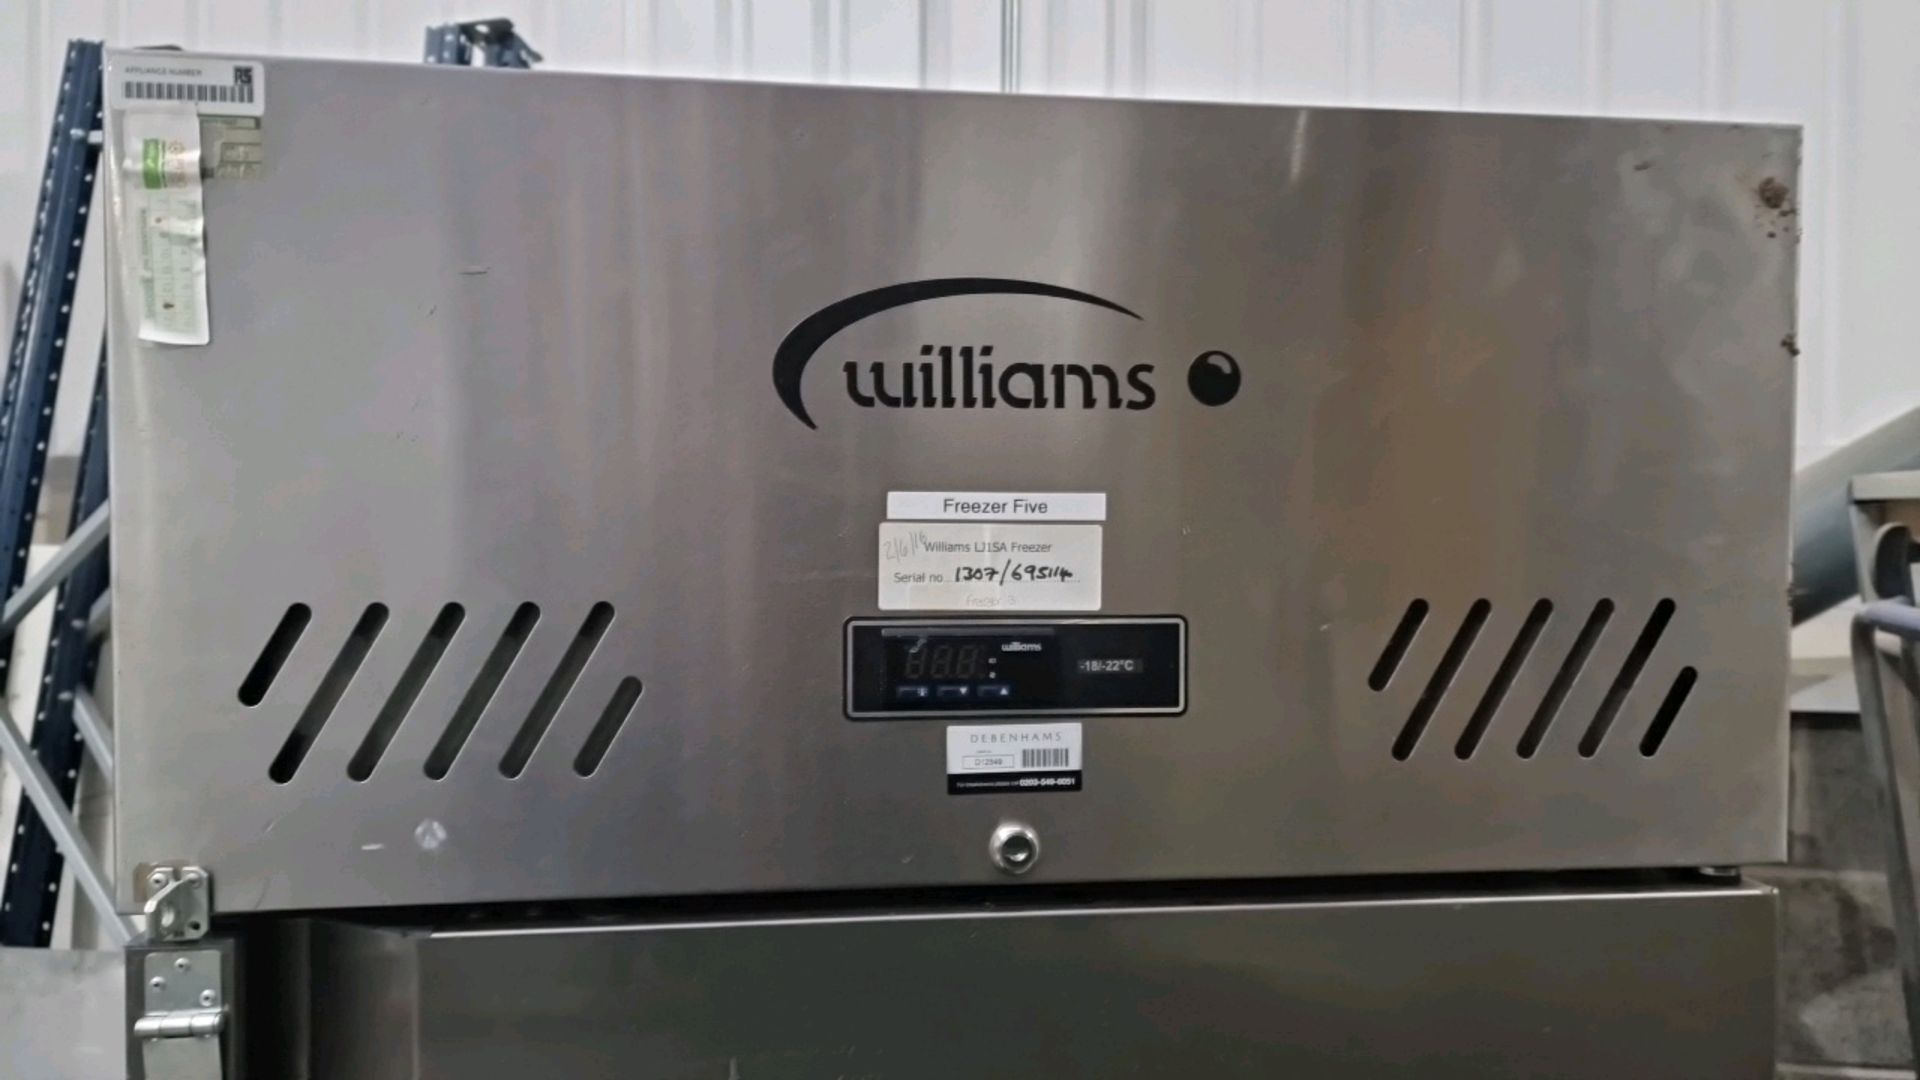 Williams LJ1SA Freezer - Image 3 of 6